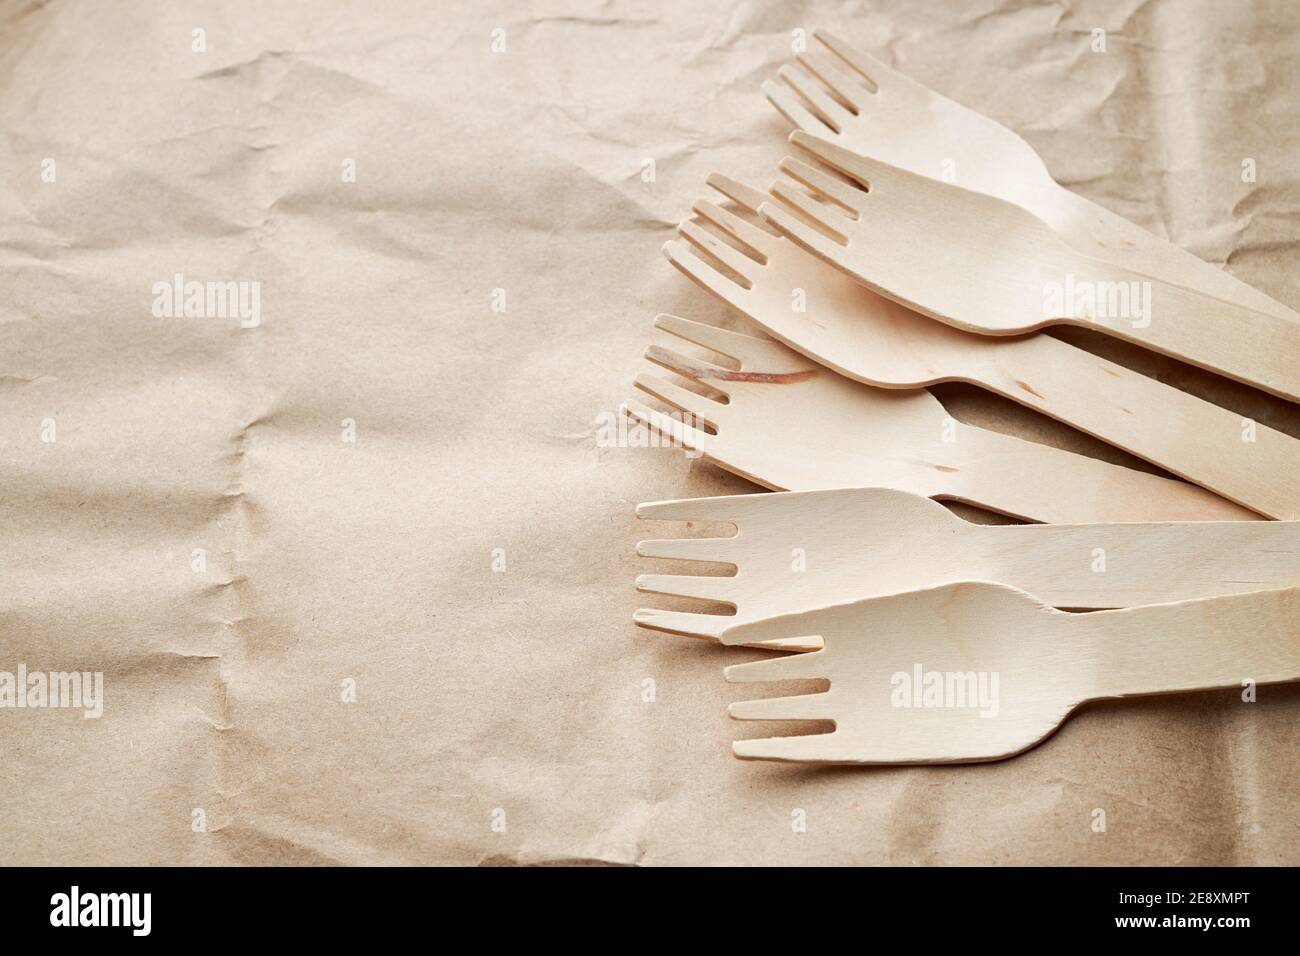 ustensiles de cuisine jetables écologiques sur fond de papier. regardez d'en haut. fourchettes en bois. concept écologique Banque D'Images